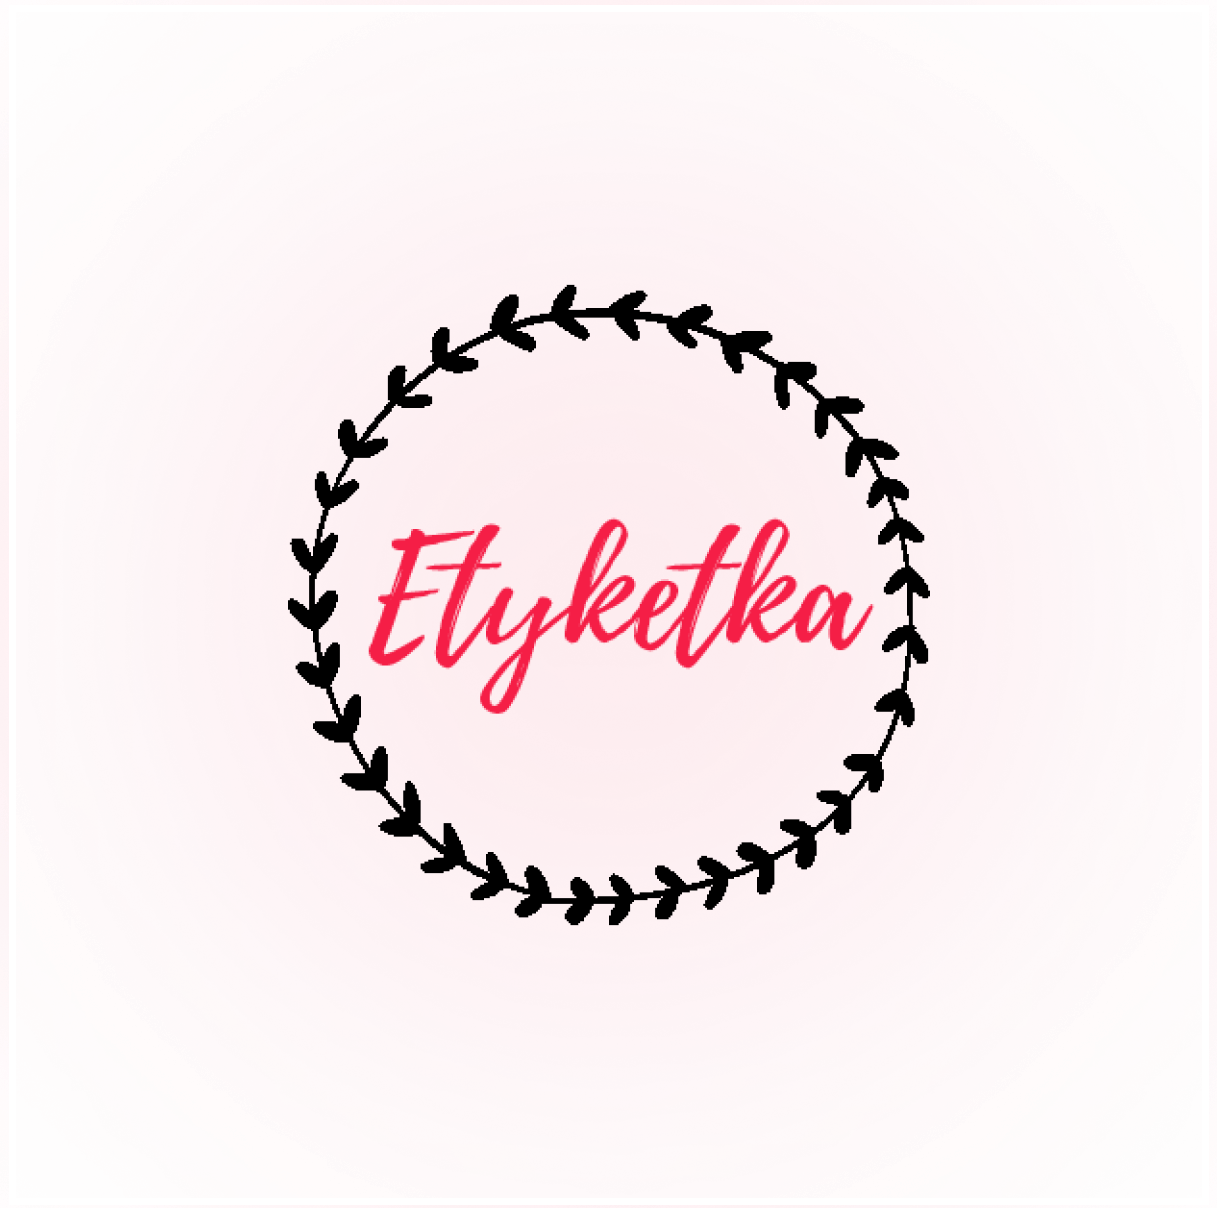 Etyketka logo